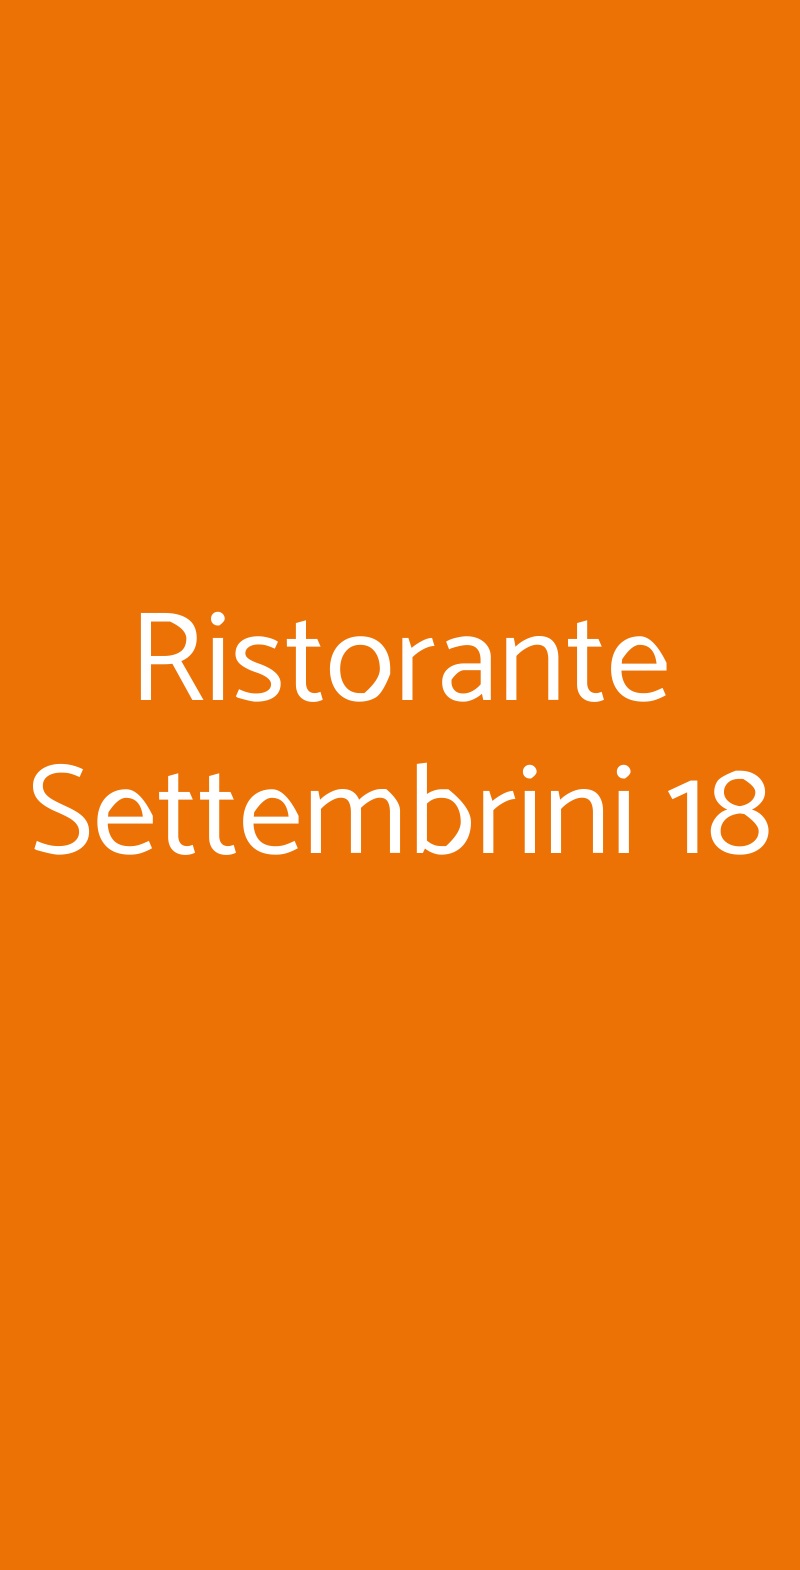 Ristorante Settembrini 18 Milano menù 1 pagina